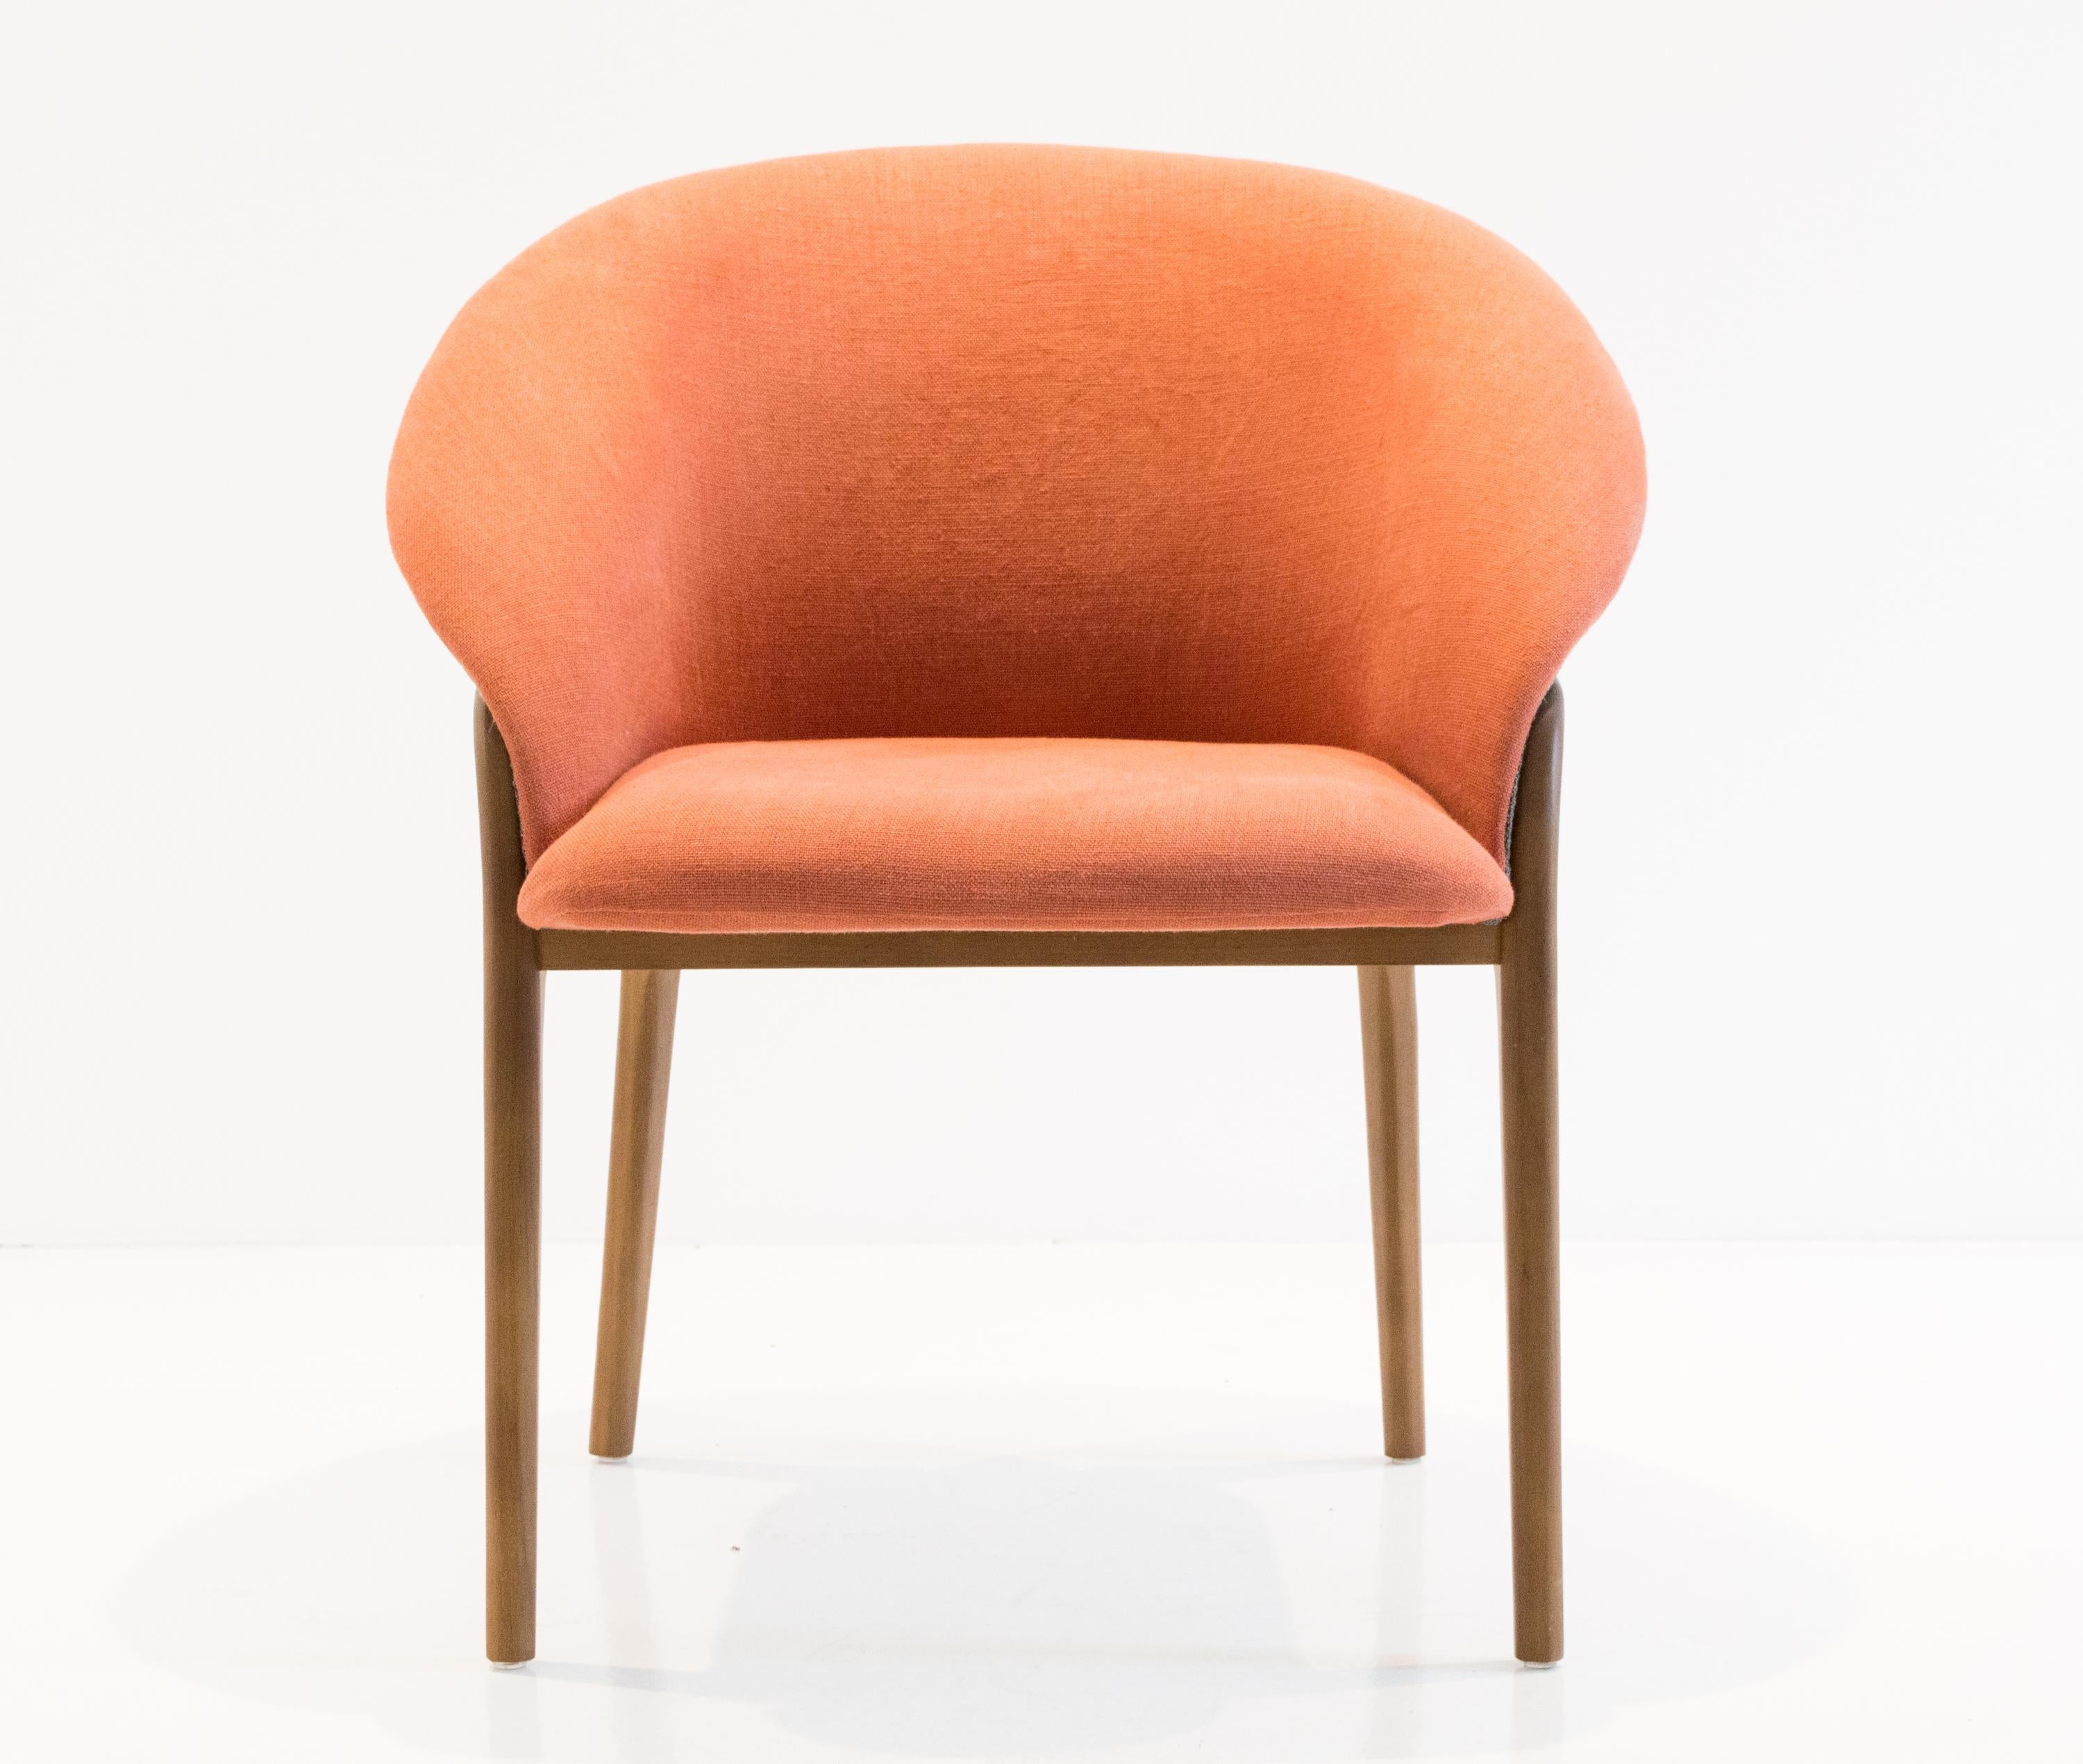 Chaise organique moderne en bois massif, assise flexible tapissée en vente 2